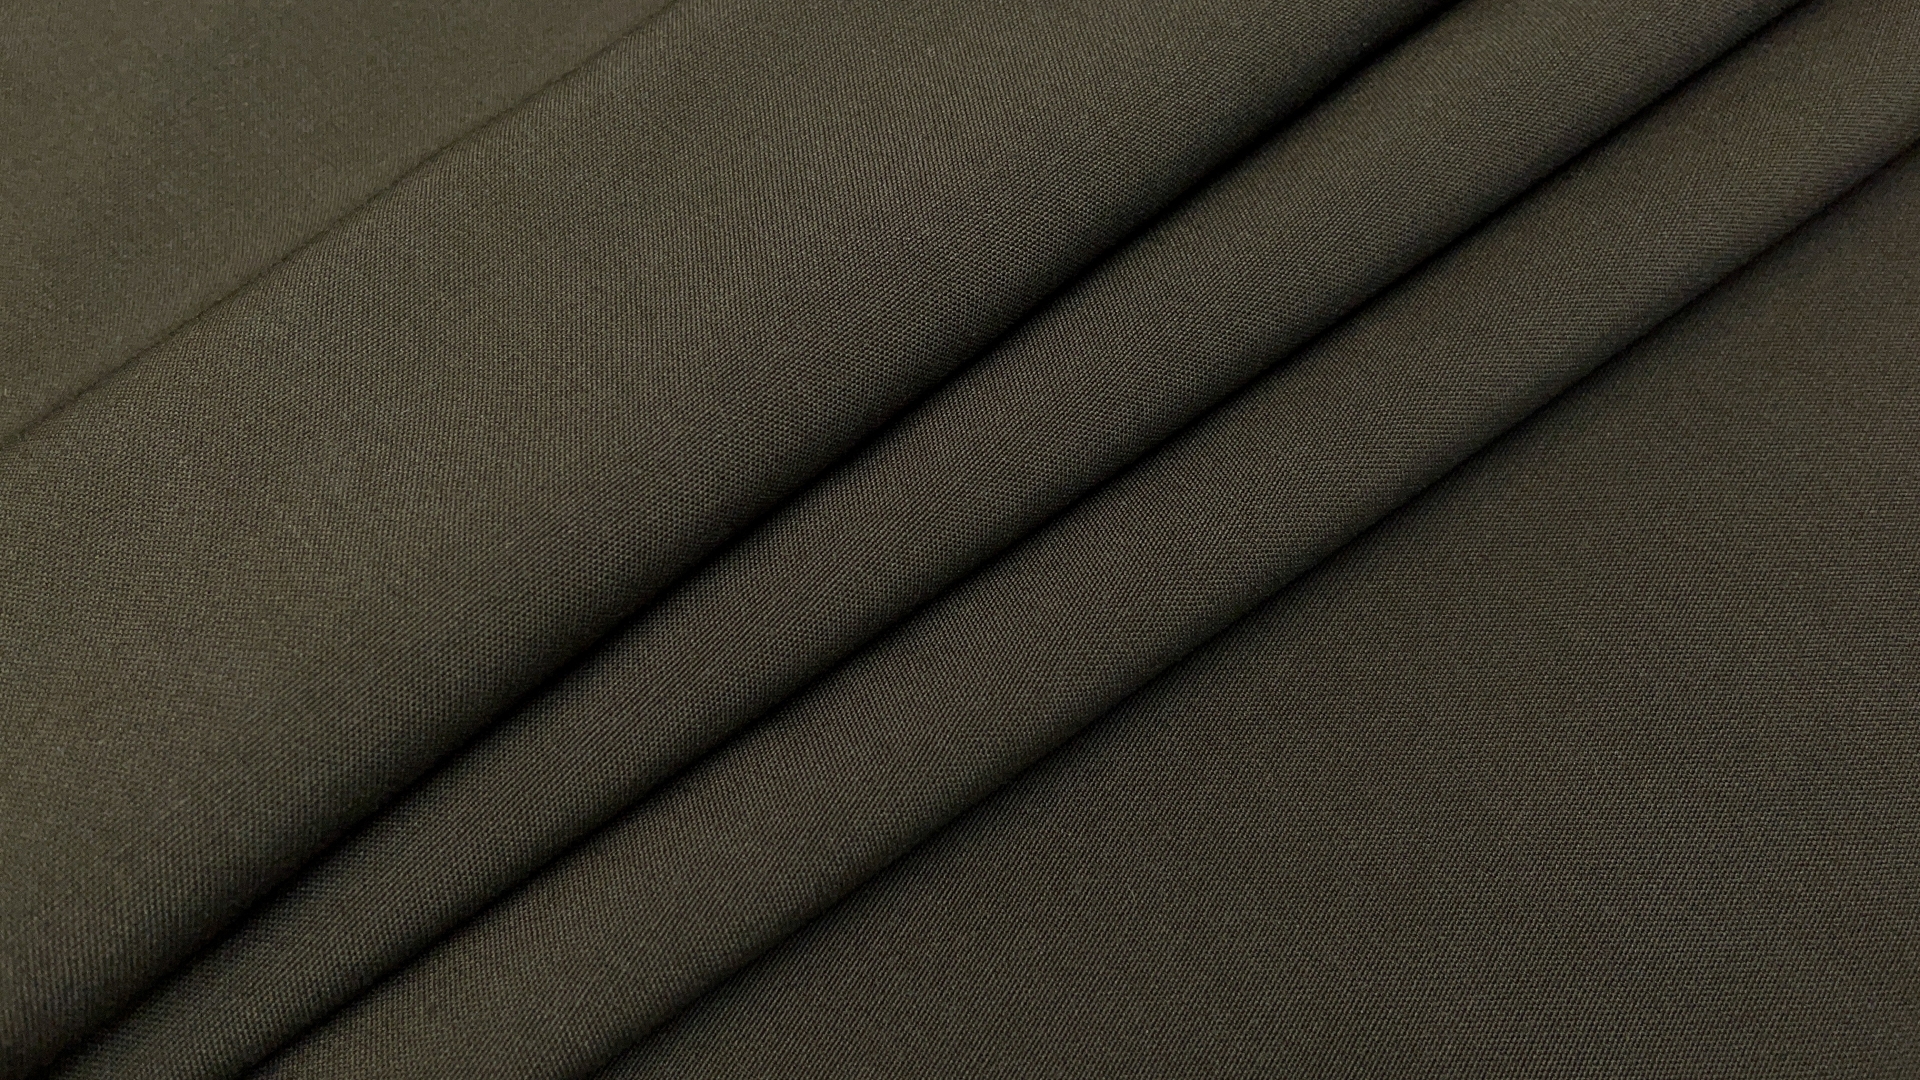 Плотная формоустойчивая шерсть цвета хаки. Идеально для пиджака оверсайз